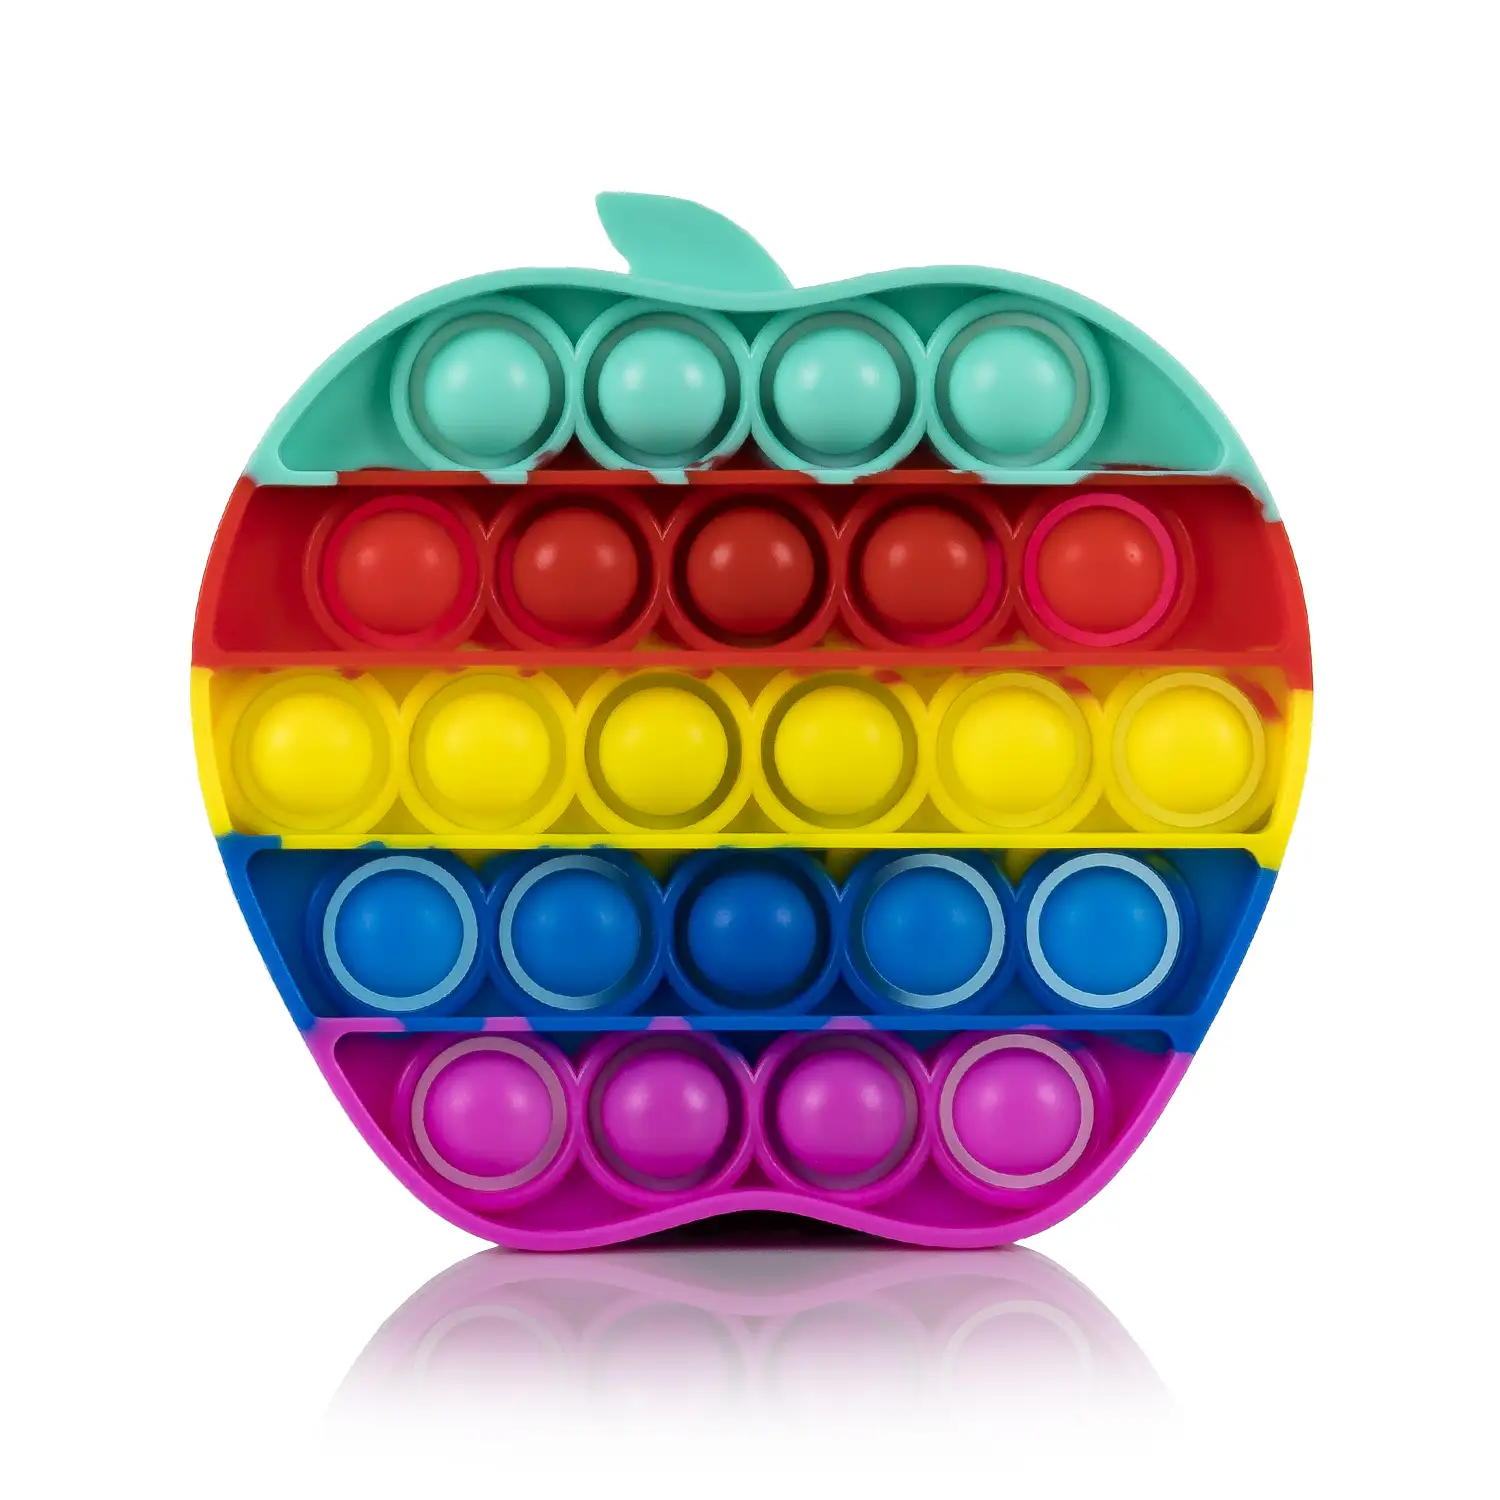 Bubble Pop It juguete sensitivo desestresante, burbujas de silicona para apretar y pulsar. Diseño manzana multicolor.